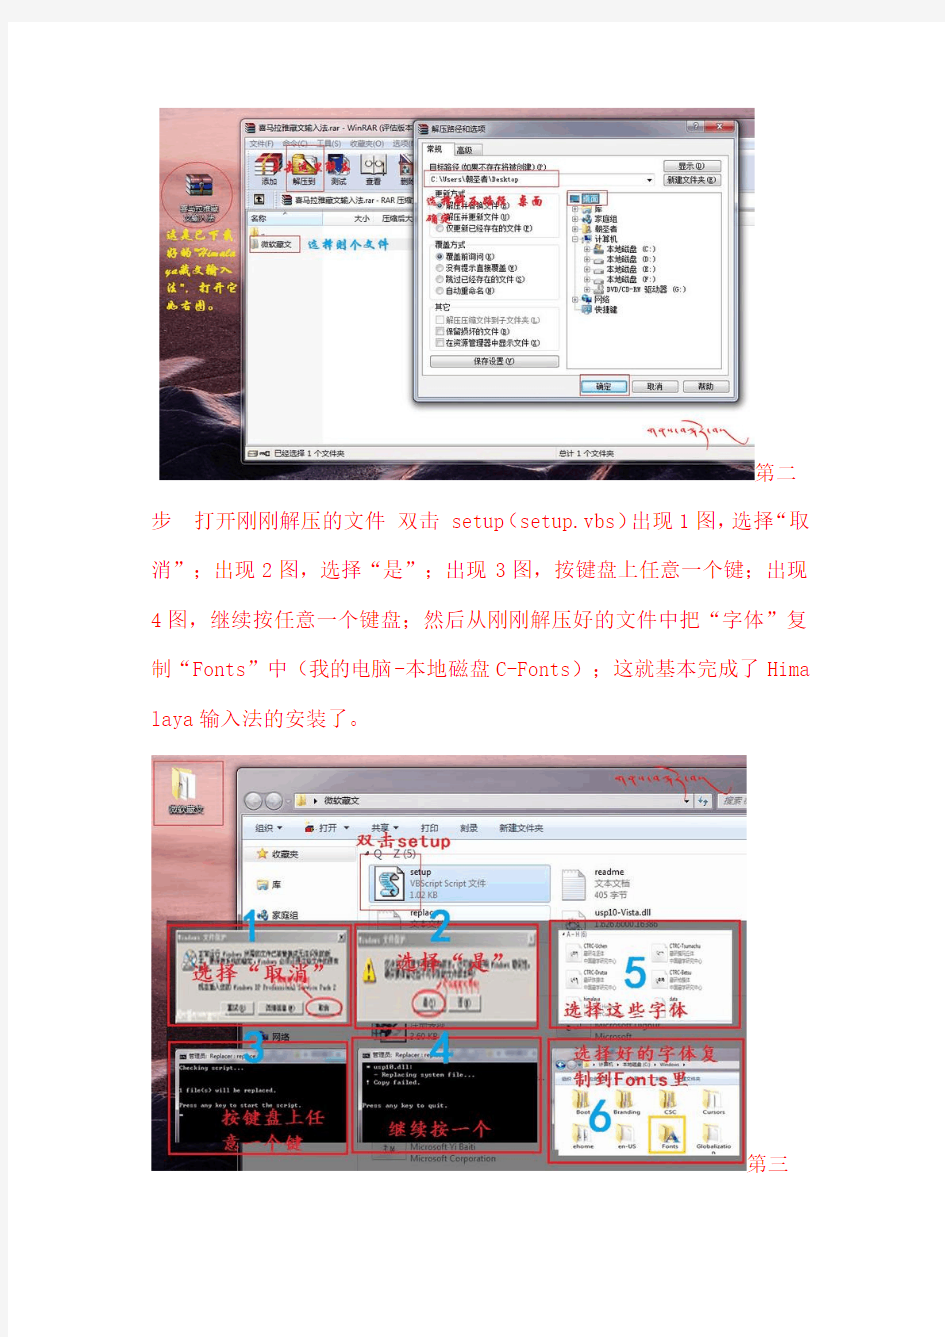 Himalaya藏文输入法的安装过程及其键盘布局介绍